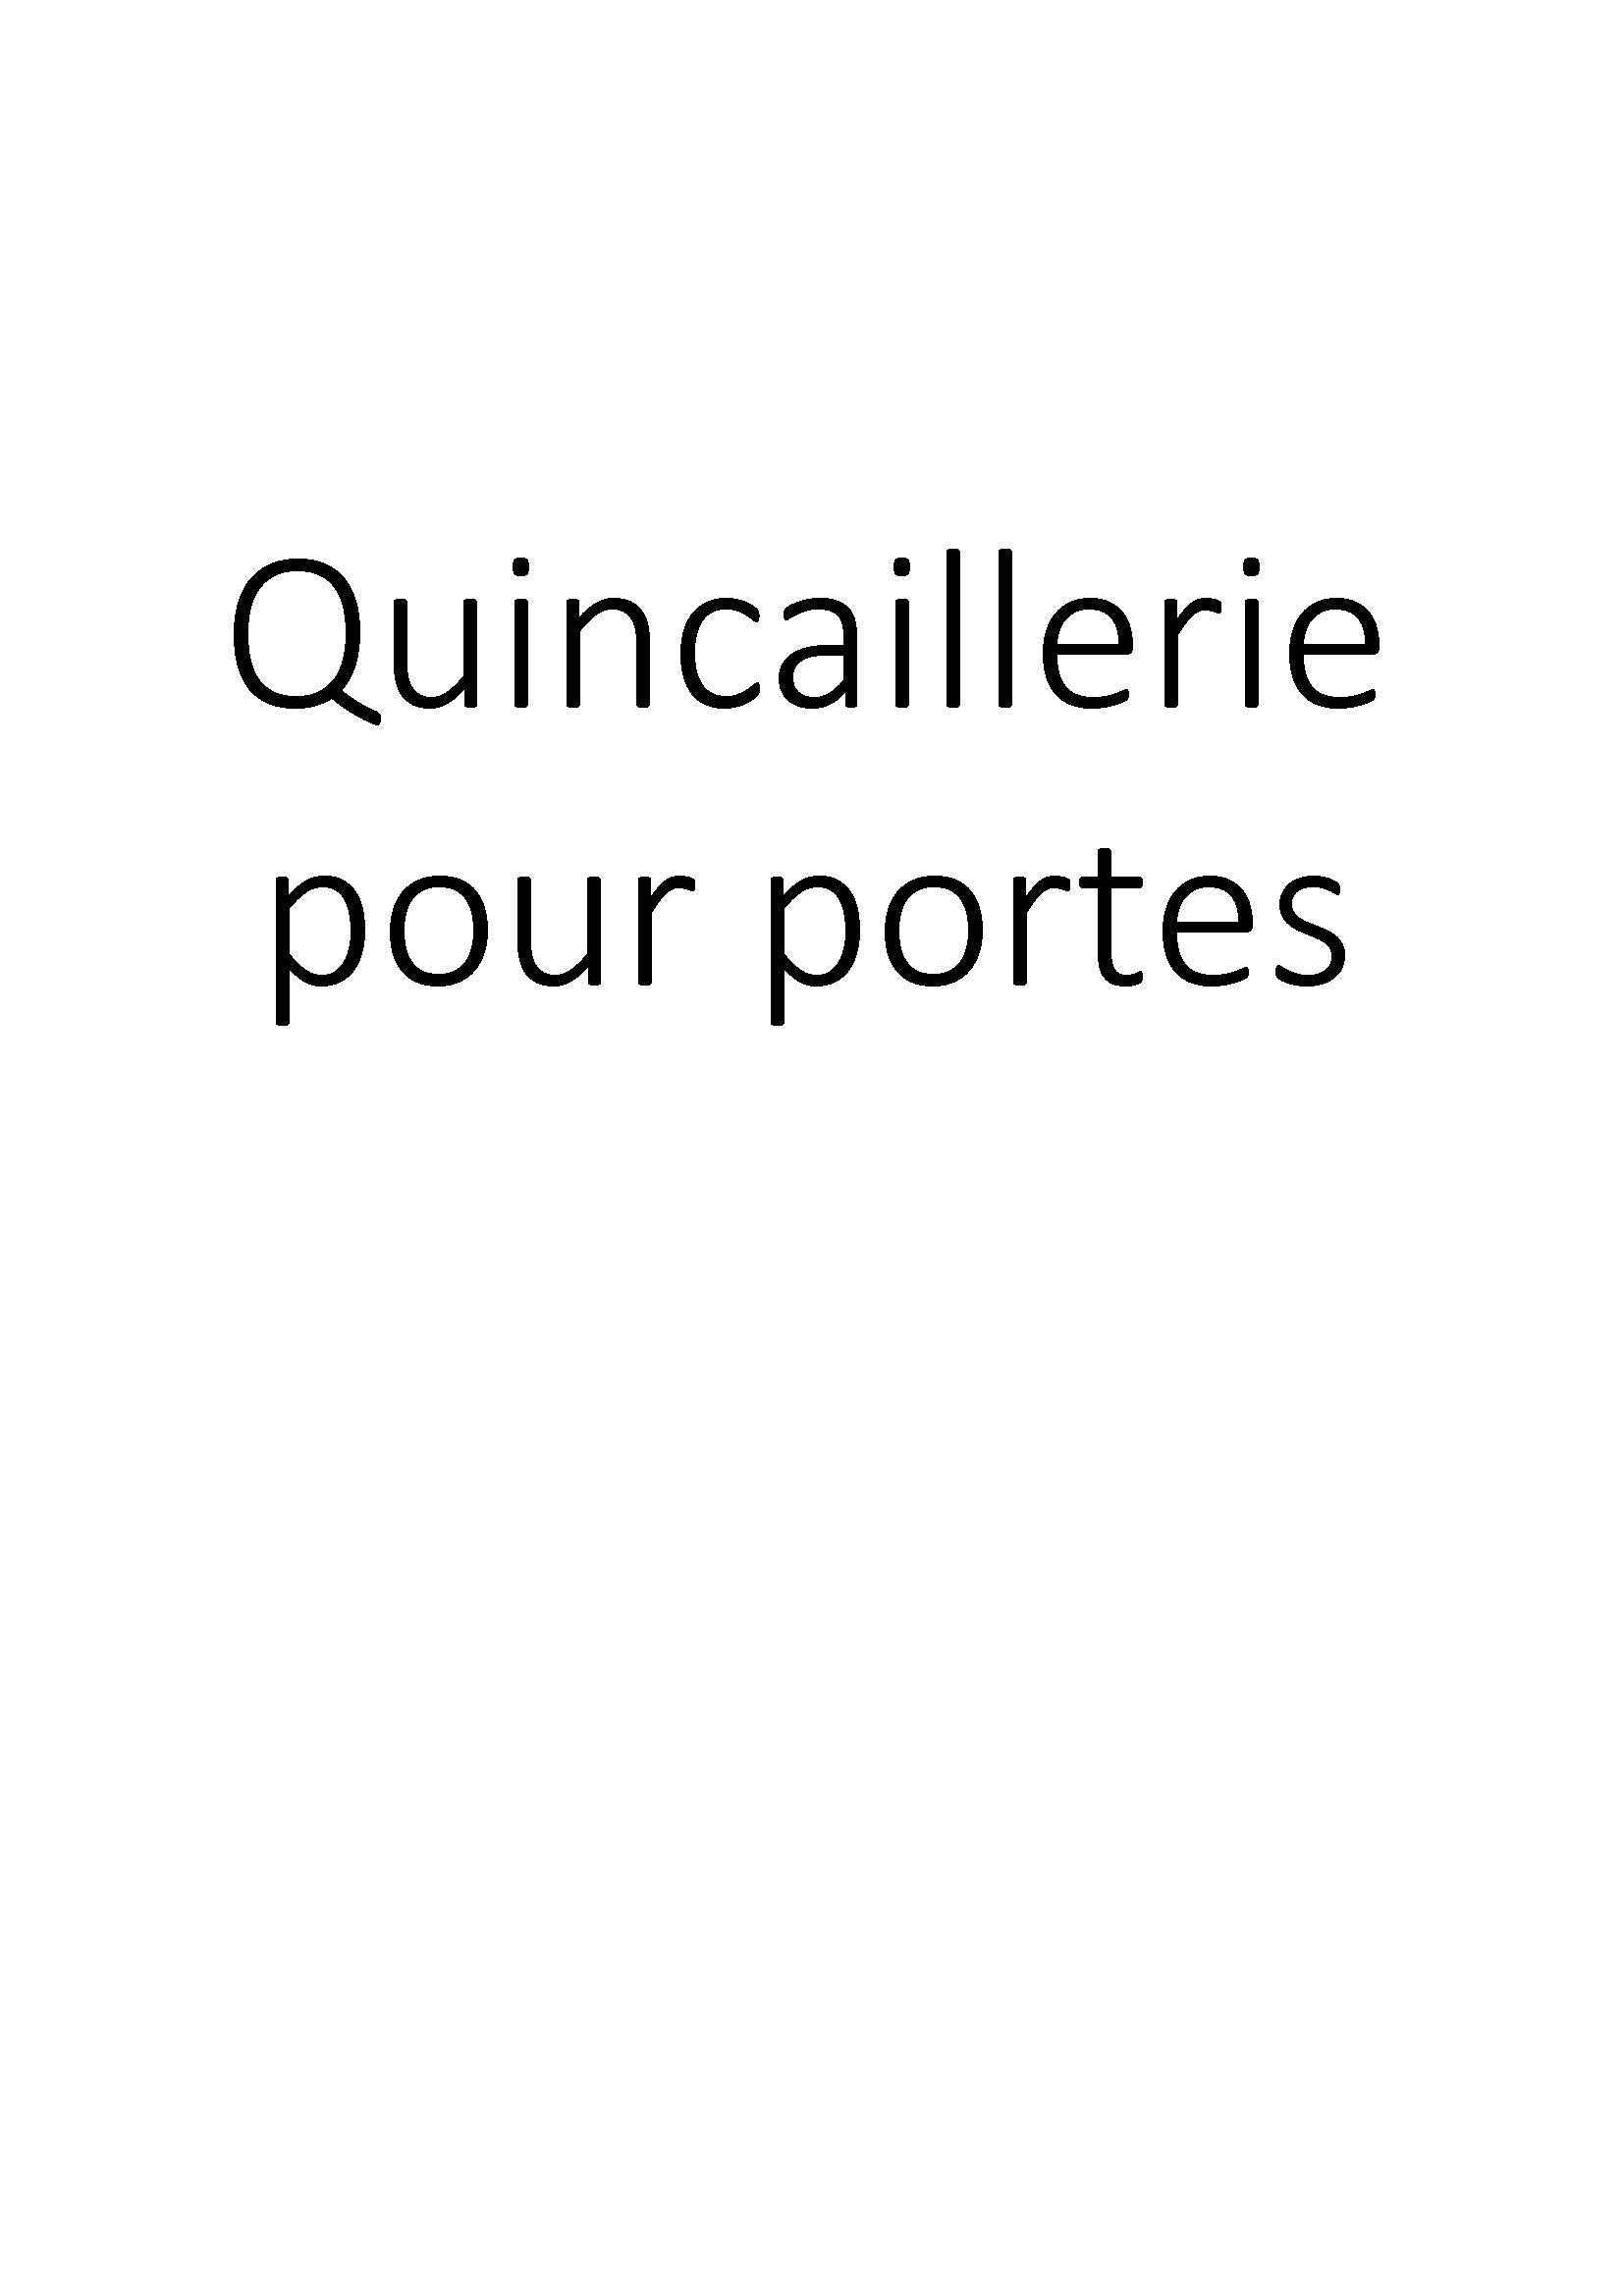 Quincaillerie pour portes clicktofournisseur.com